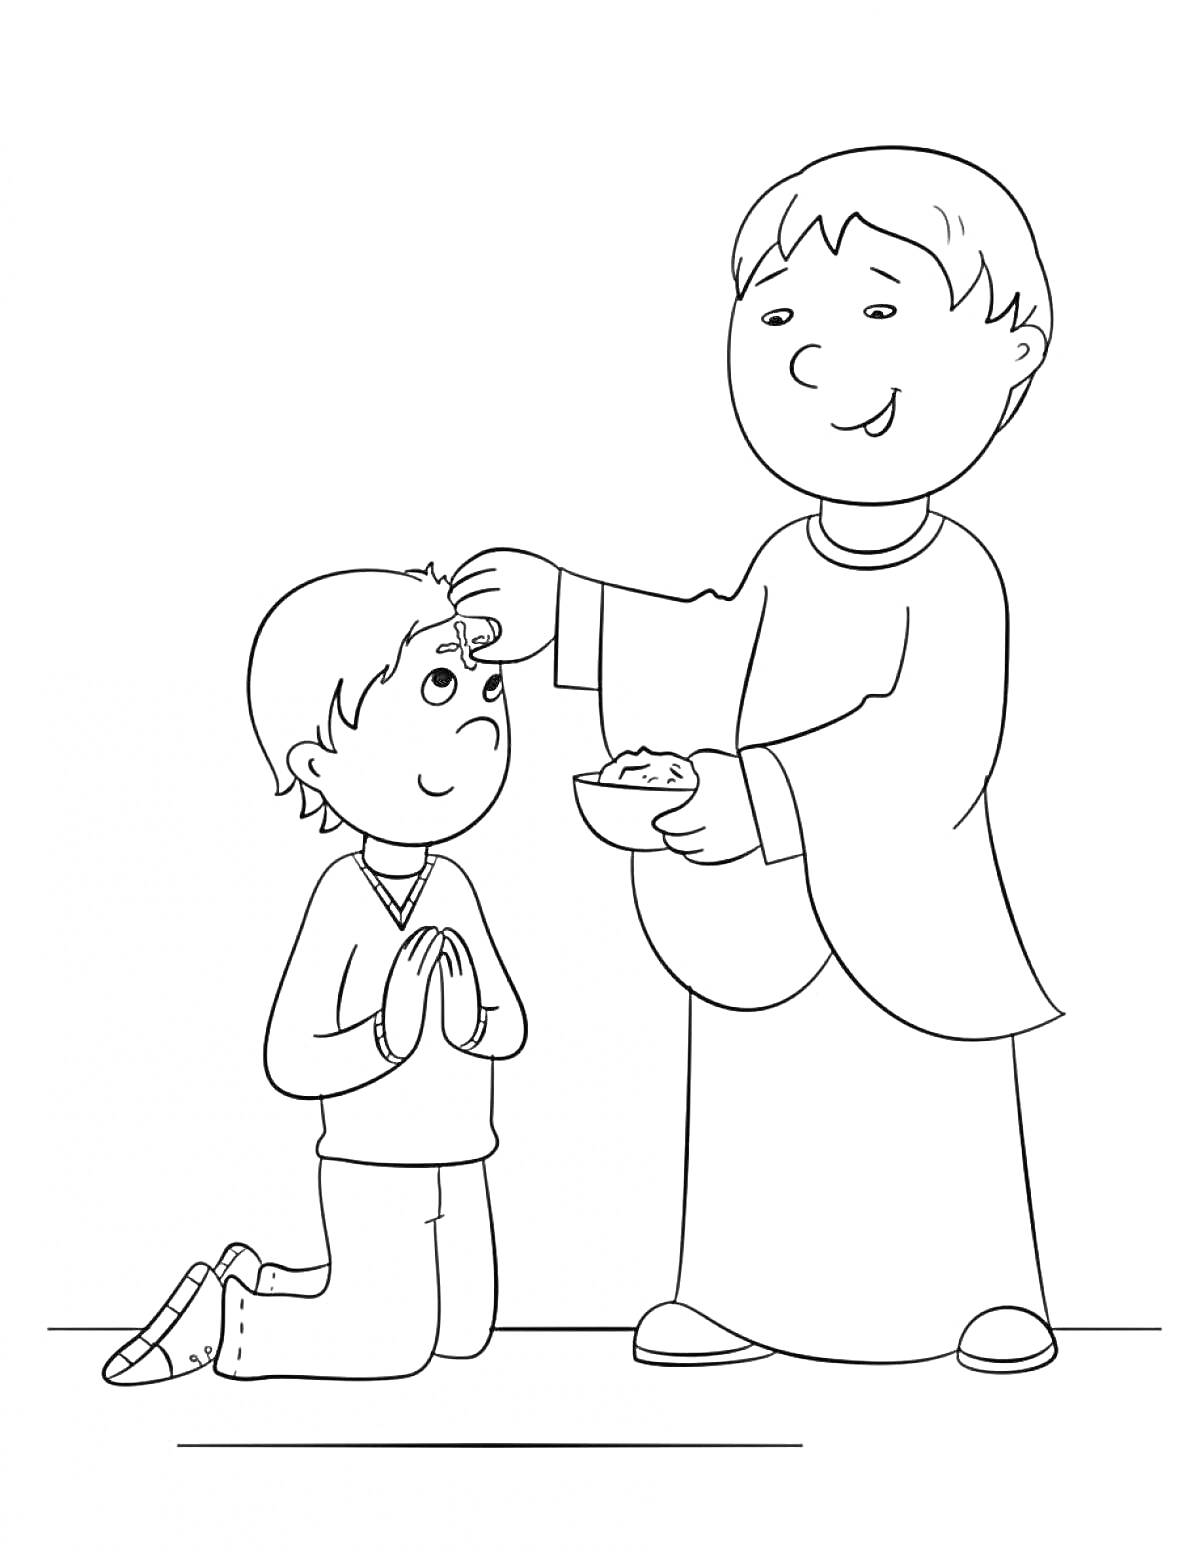 Раскраска Мальчик на коленях с молитвенными руками и священник, наносящий пепел на лоб